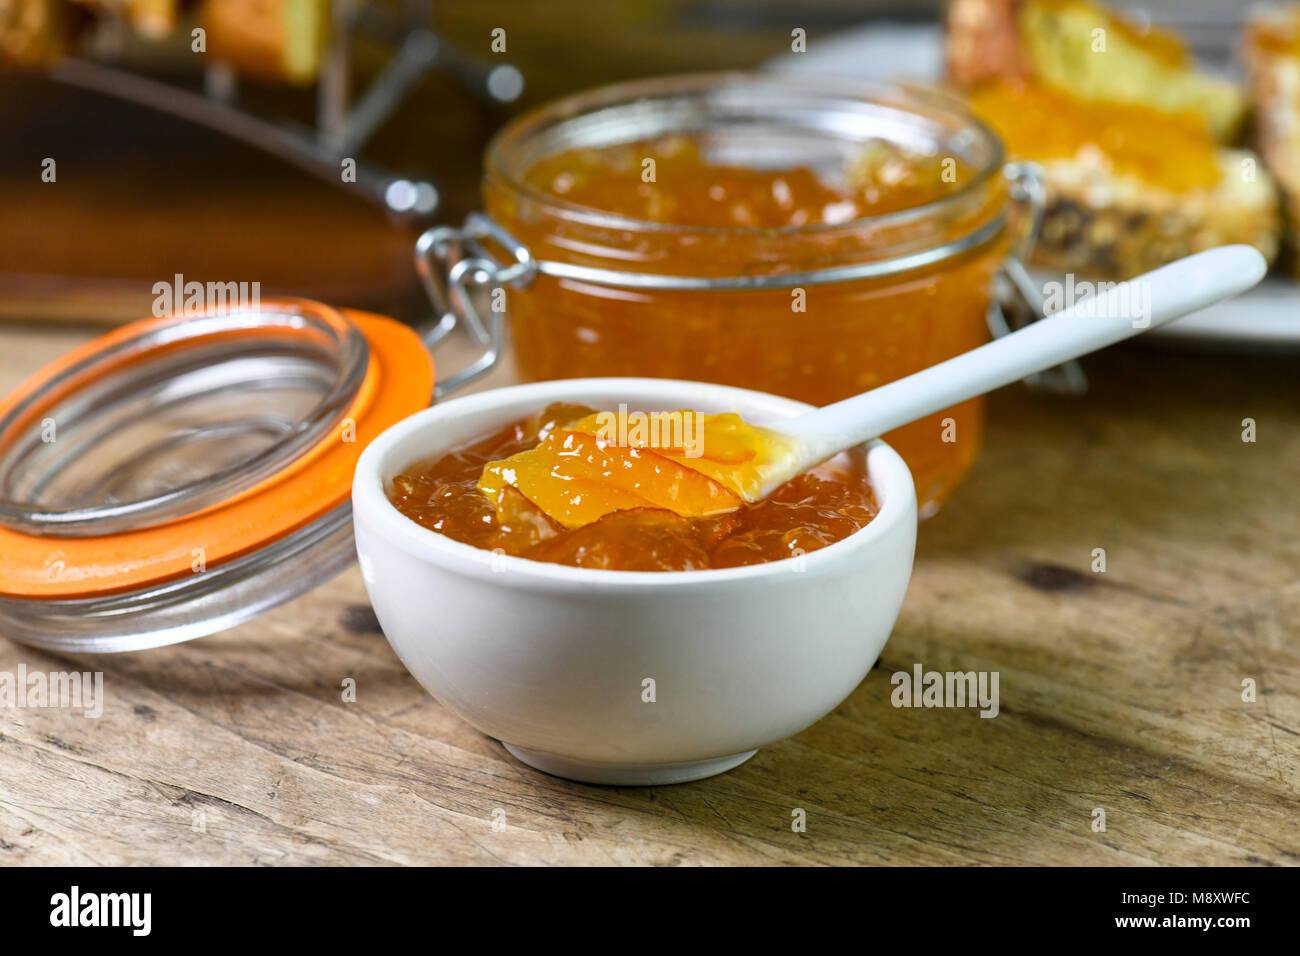 Frühstück mit hausgemachten Bio Marmelade in einer kleinen weißen Schale mit größeren Betrag in einem Einmachglas auf einer alten Küche aus Holz Tisch c Stockfoto